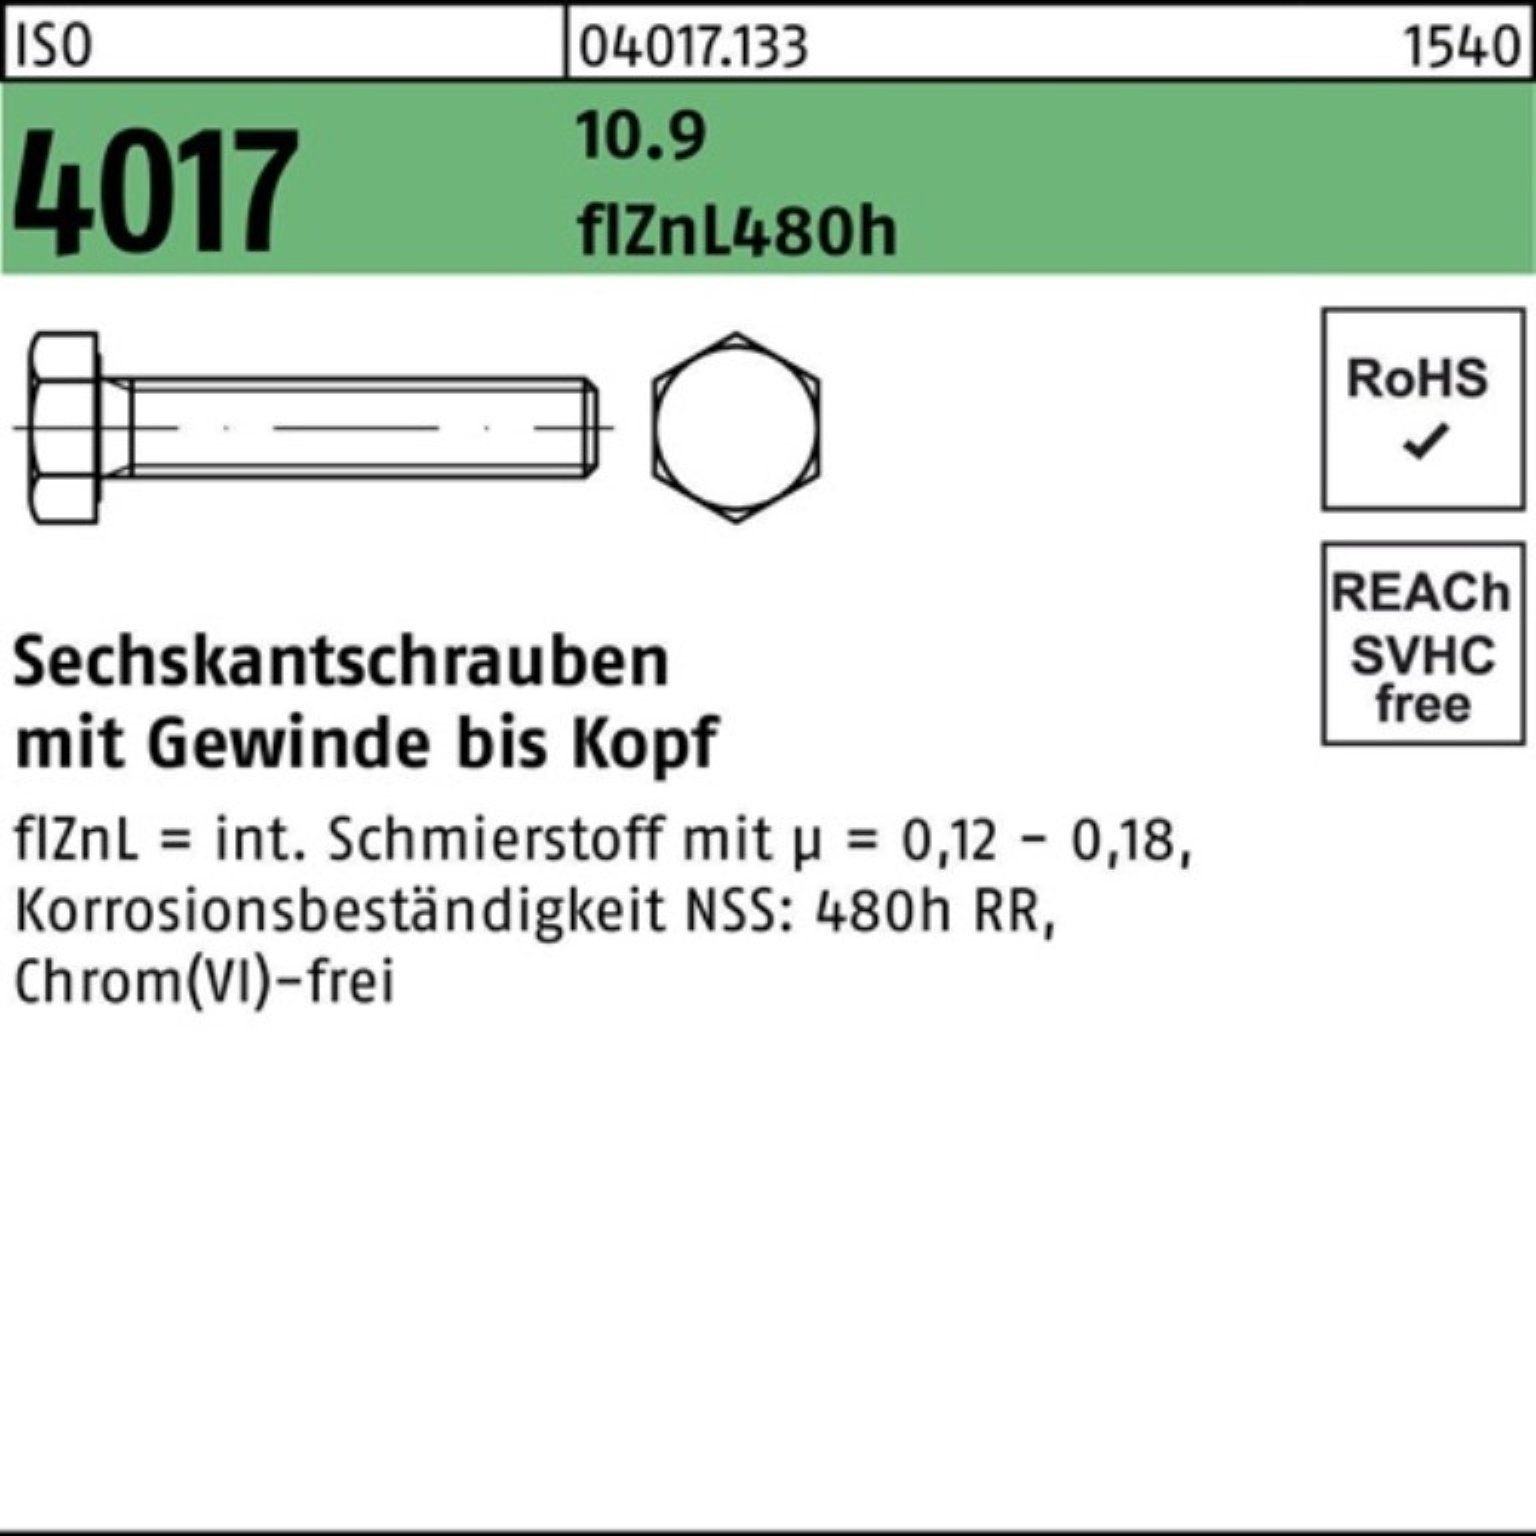 10.9 Sechskantschraube 70 4017 Bufab zinklamellenb. VG 2 ISO 100er Pack Sechskantschraube M24x